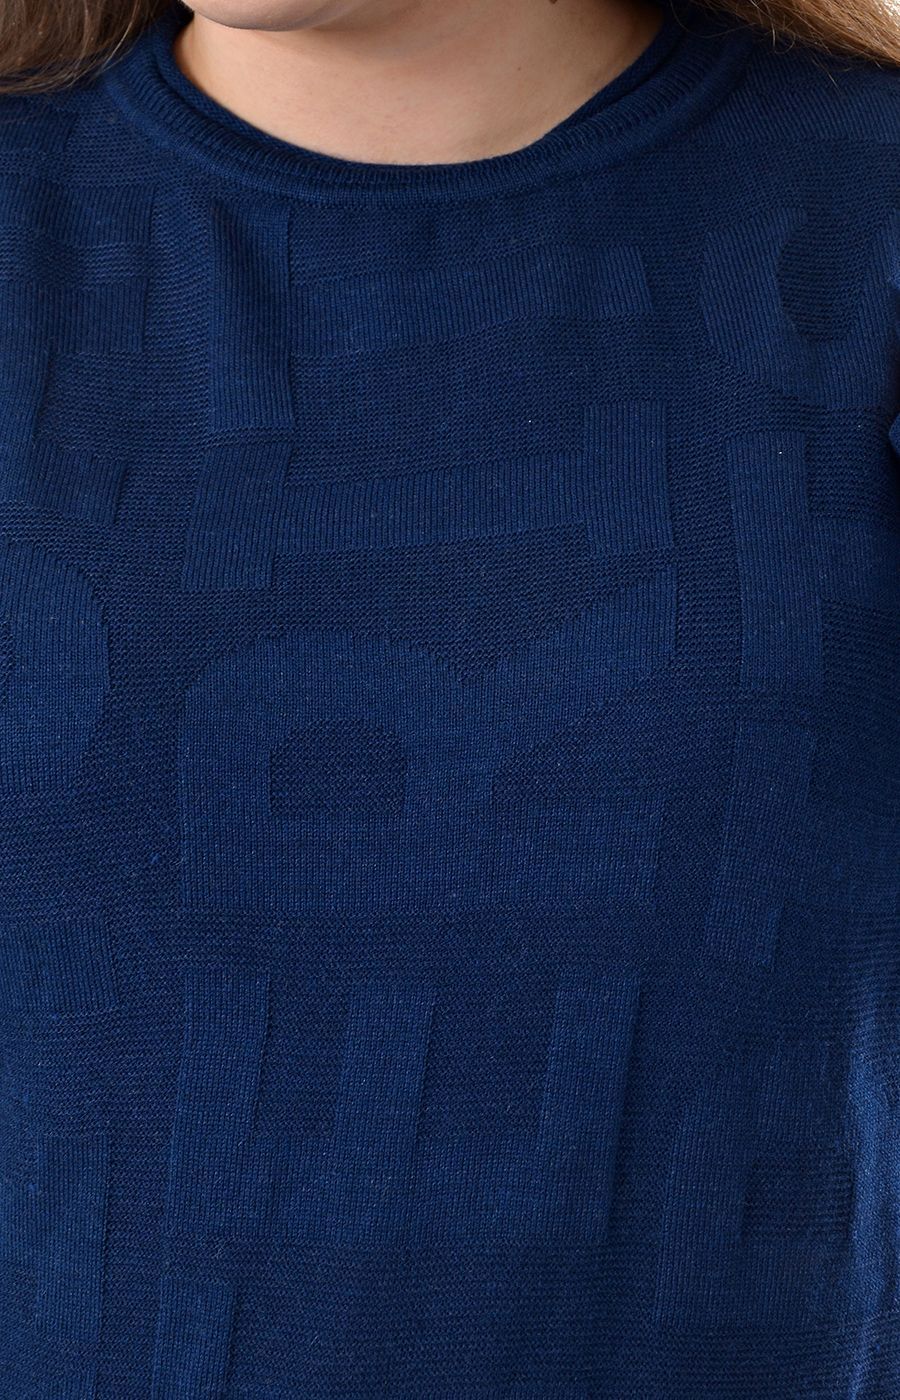 Джемпер тёмно-синий большого размера